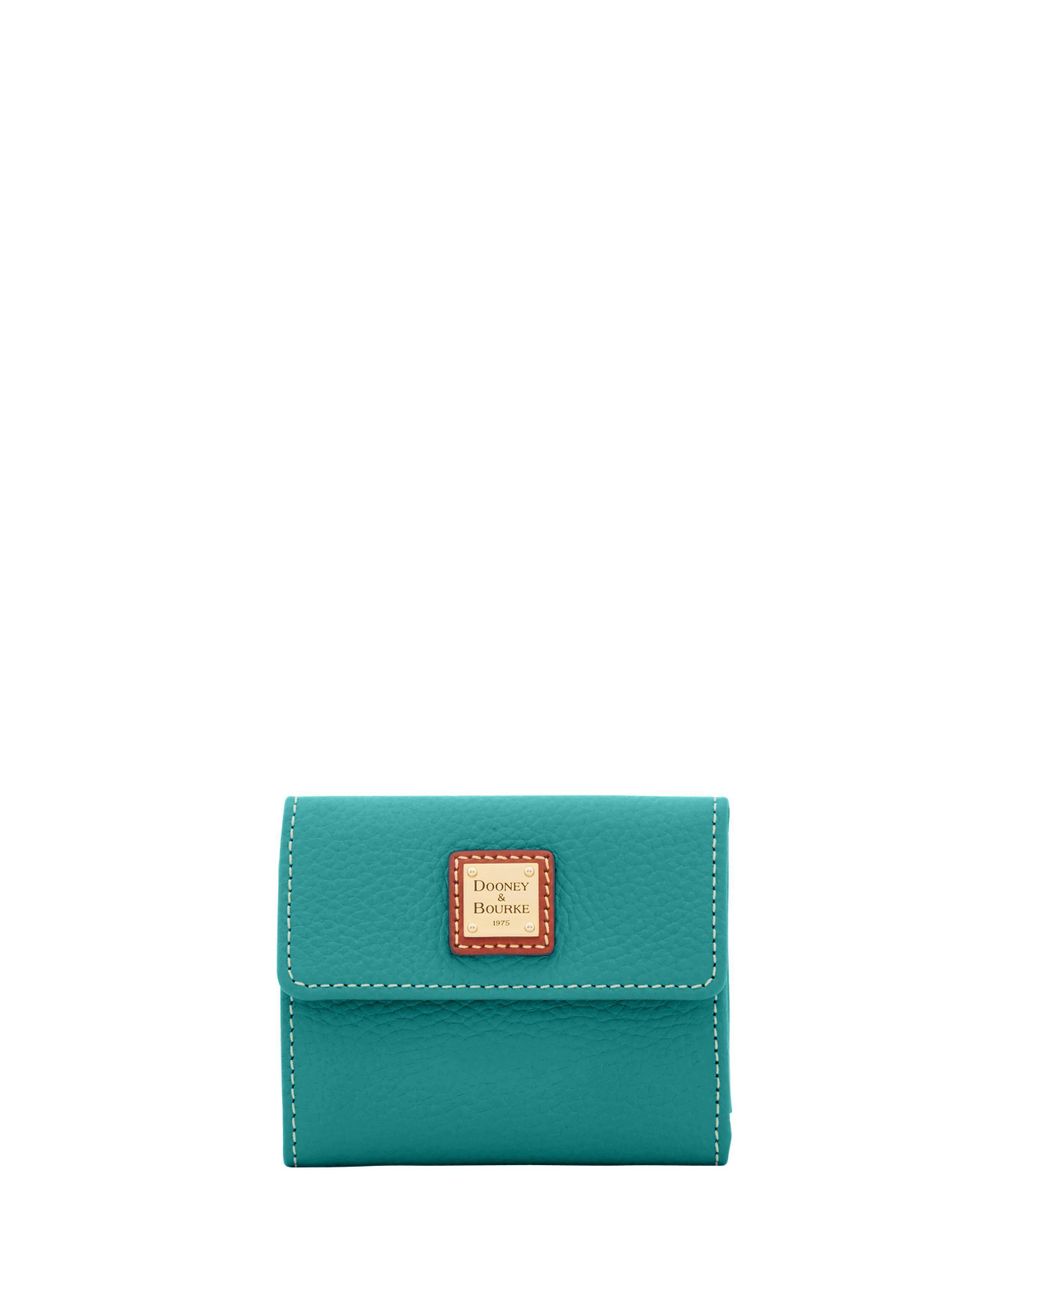 Dooney & Bourke Leather Pebble Grain Small Flap Wallet in Blue | Lyst